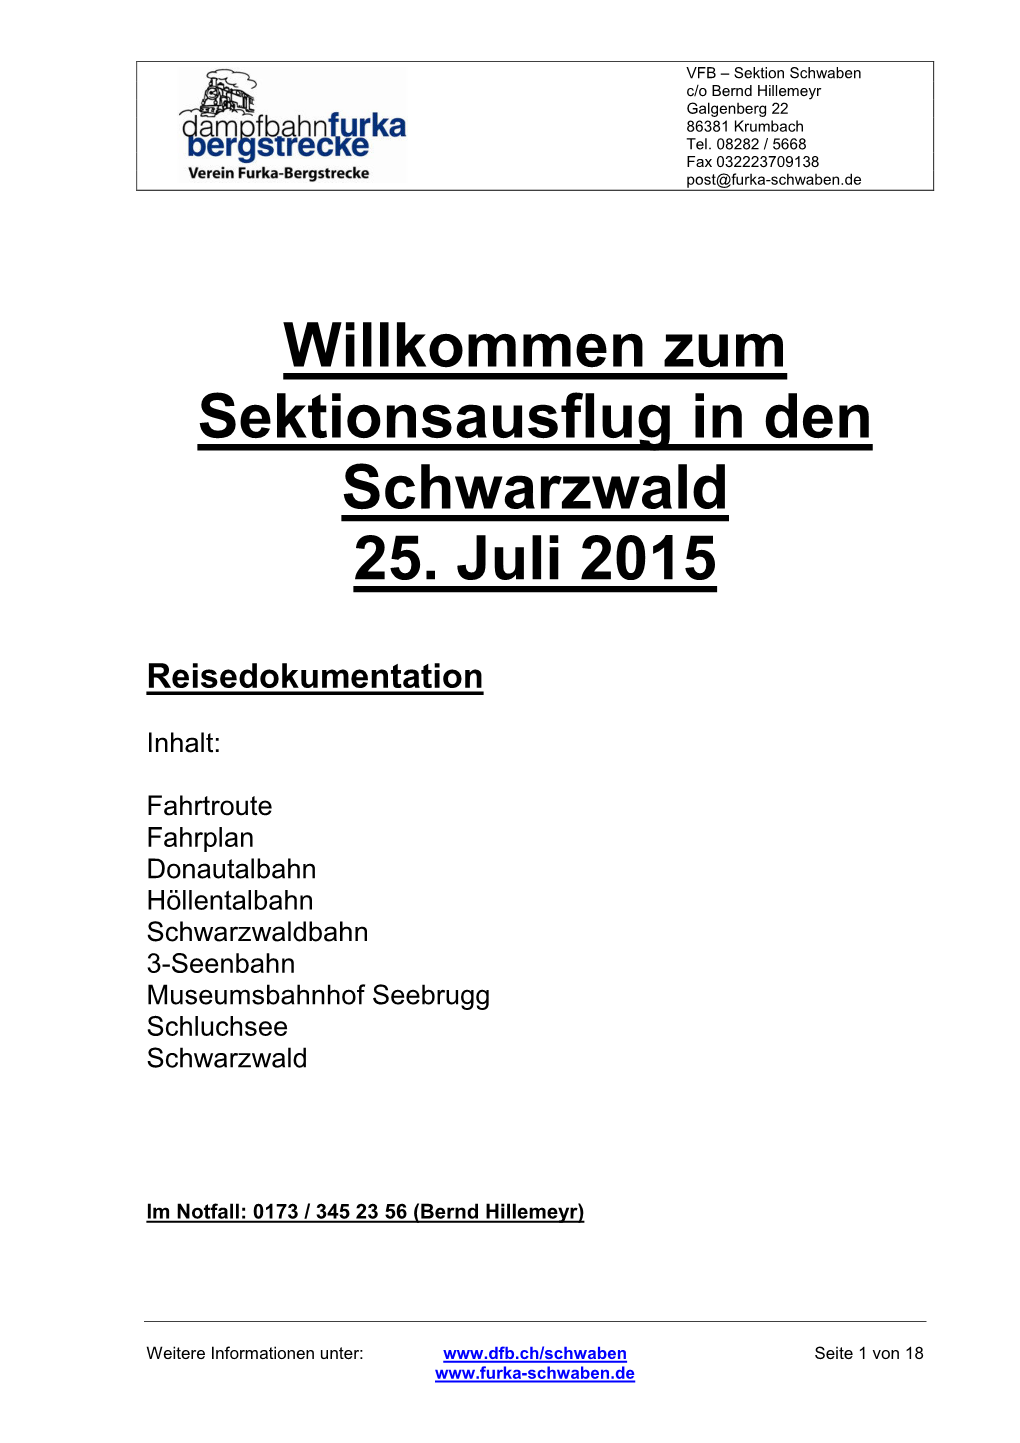 Willkommen Zum Sektionsausflug in Den Schwarzwald 25. Juli 2015